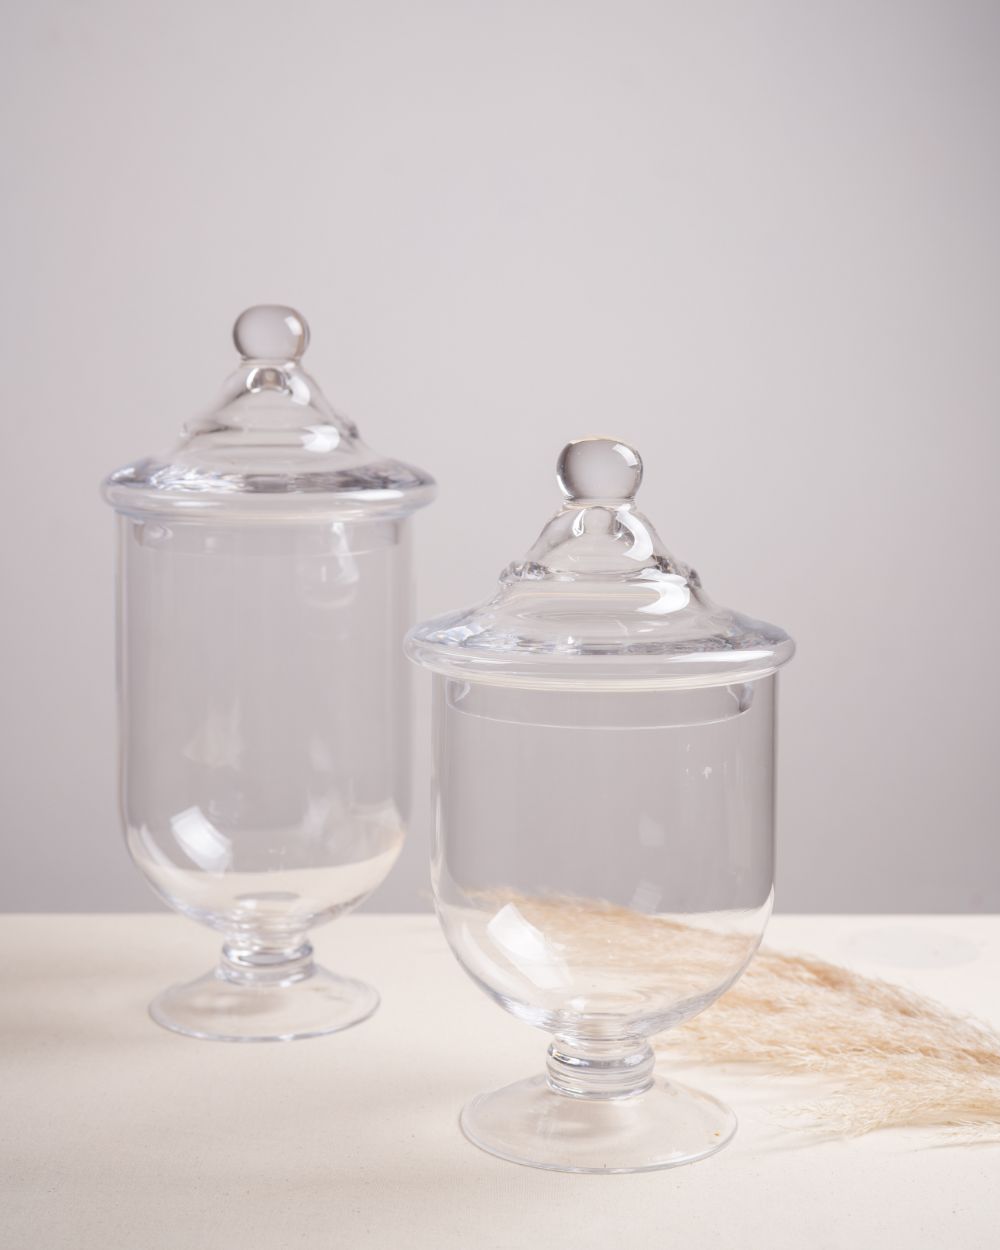 Enzovoorts sieraden ozon Glazen decoratie pot kleine model – Mirry Home Collection